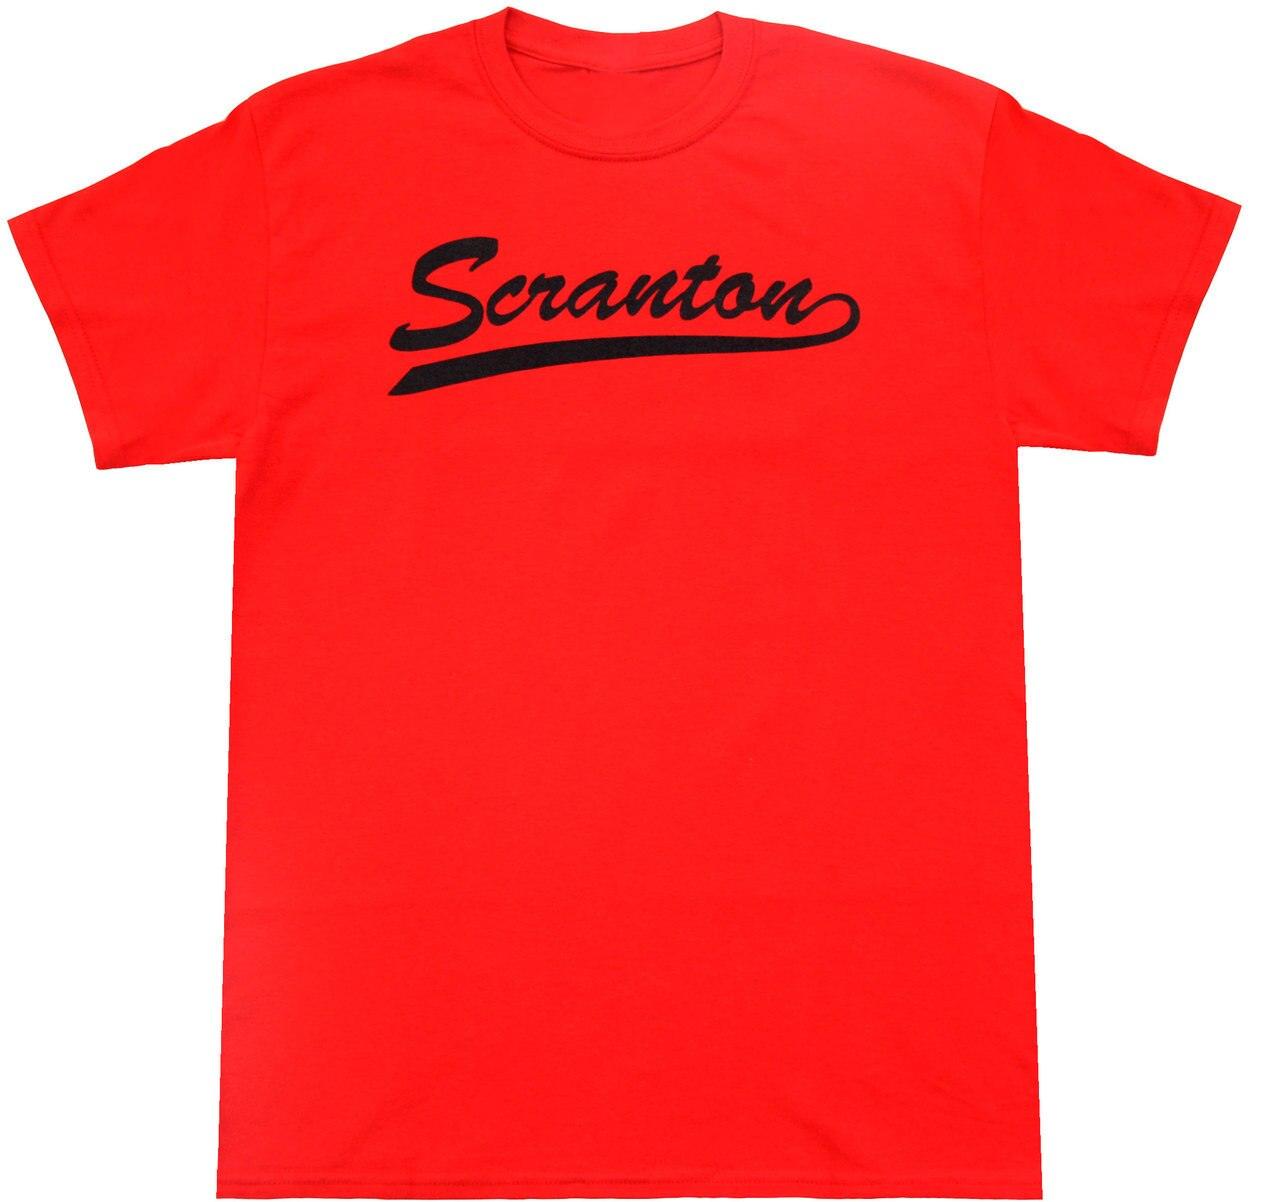 Dunder Mifflin Scranton Branch Picnic T-shirt-tvso